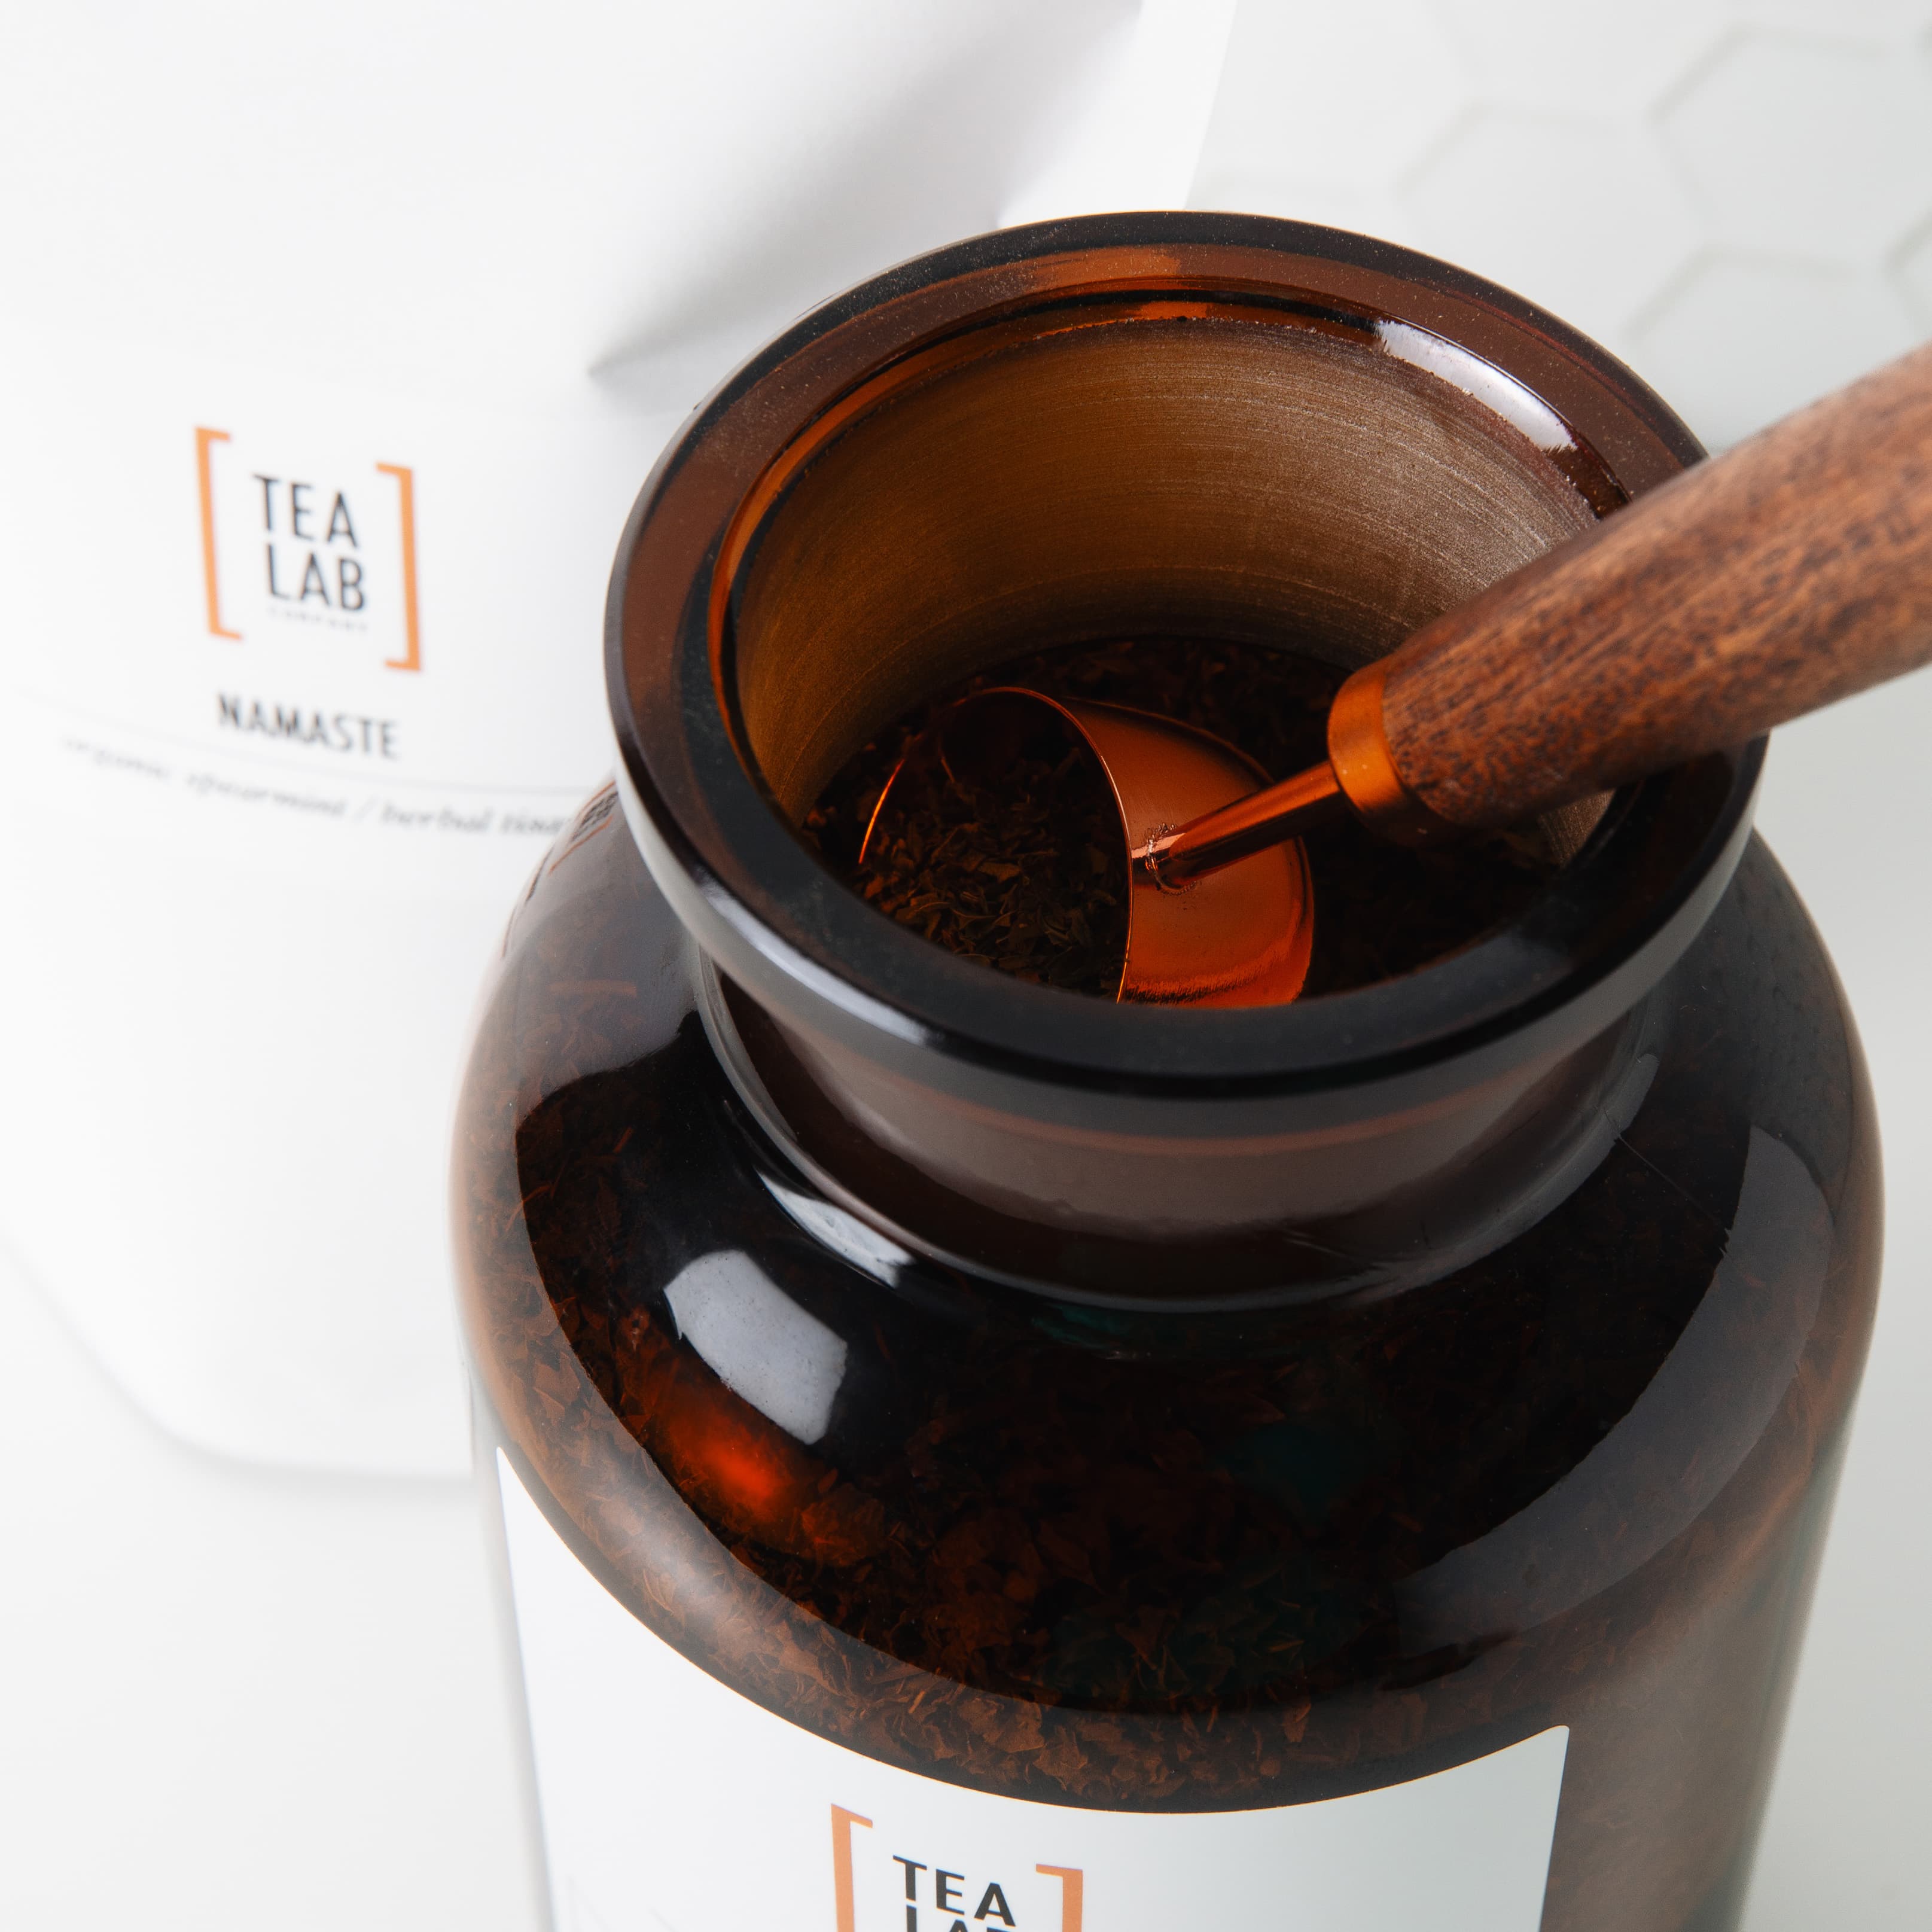 Amber glass storage jar for loose leaf tea